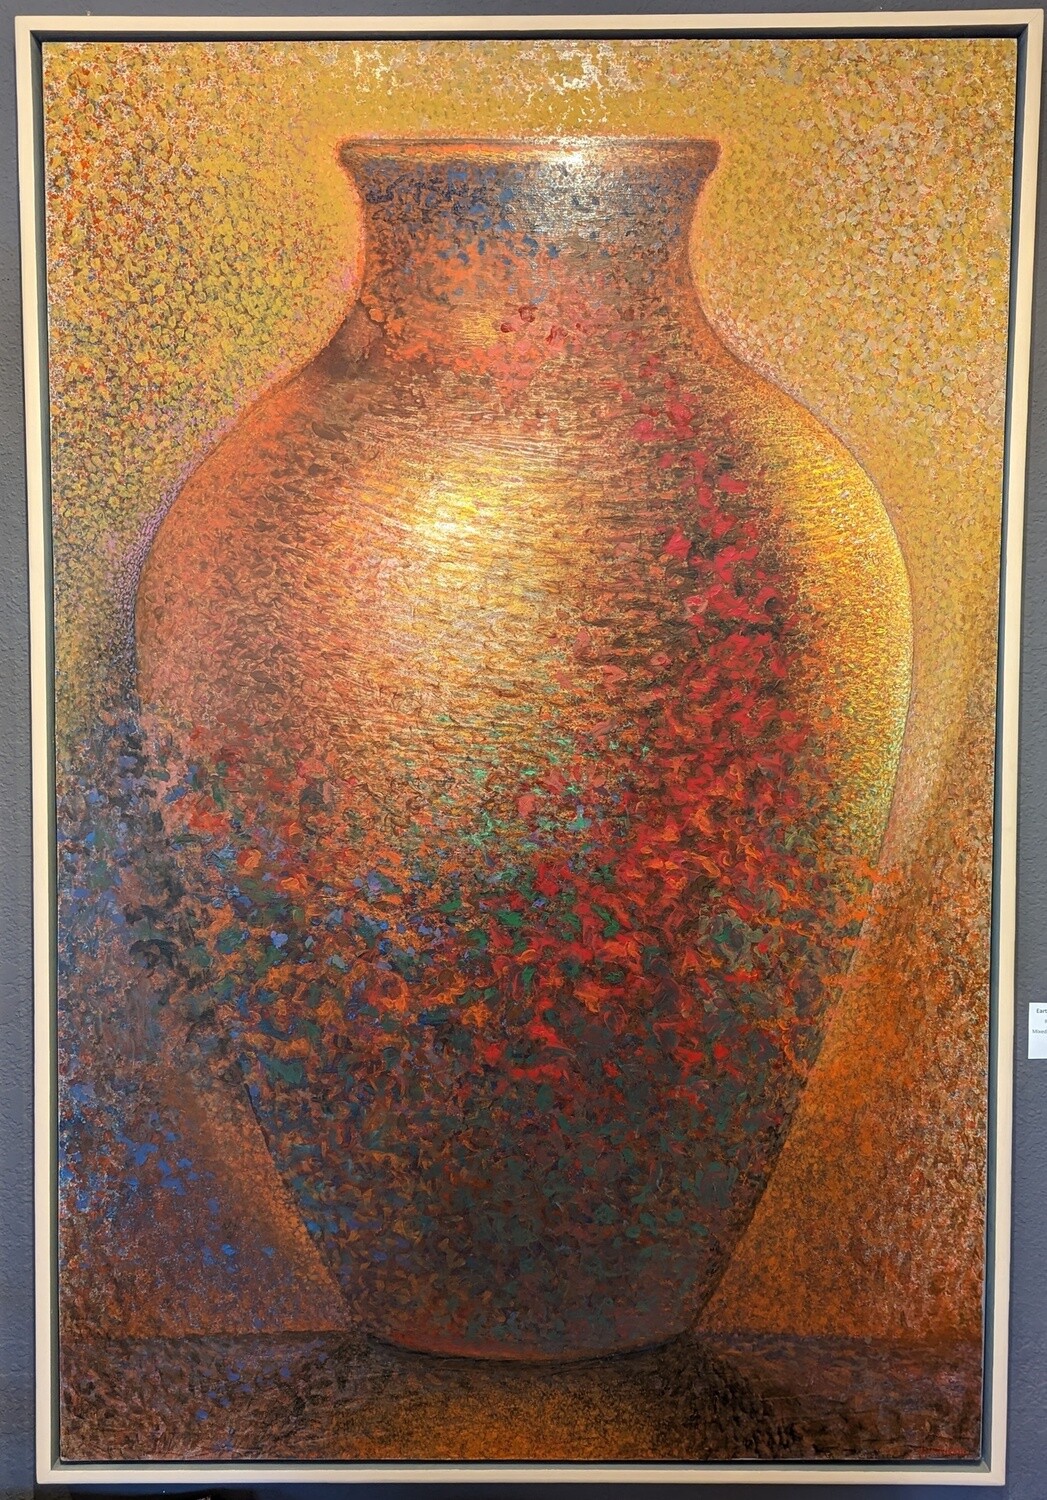 Earth Vase No. 7